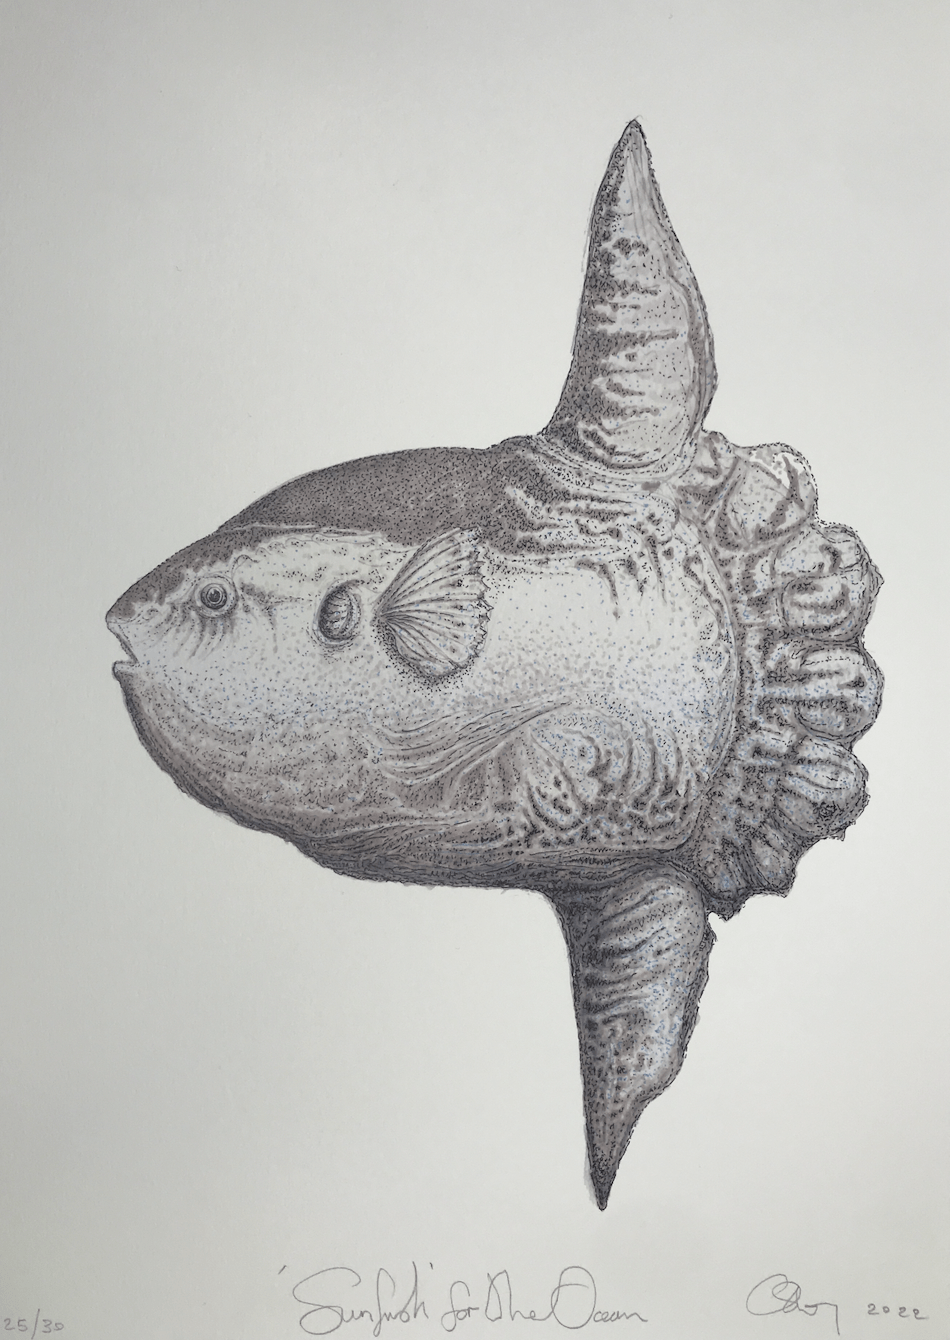 The Ocean - Sunfish - Art Print - Pelagic Records